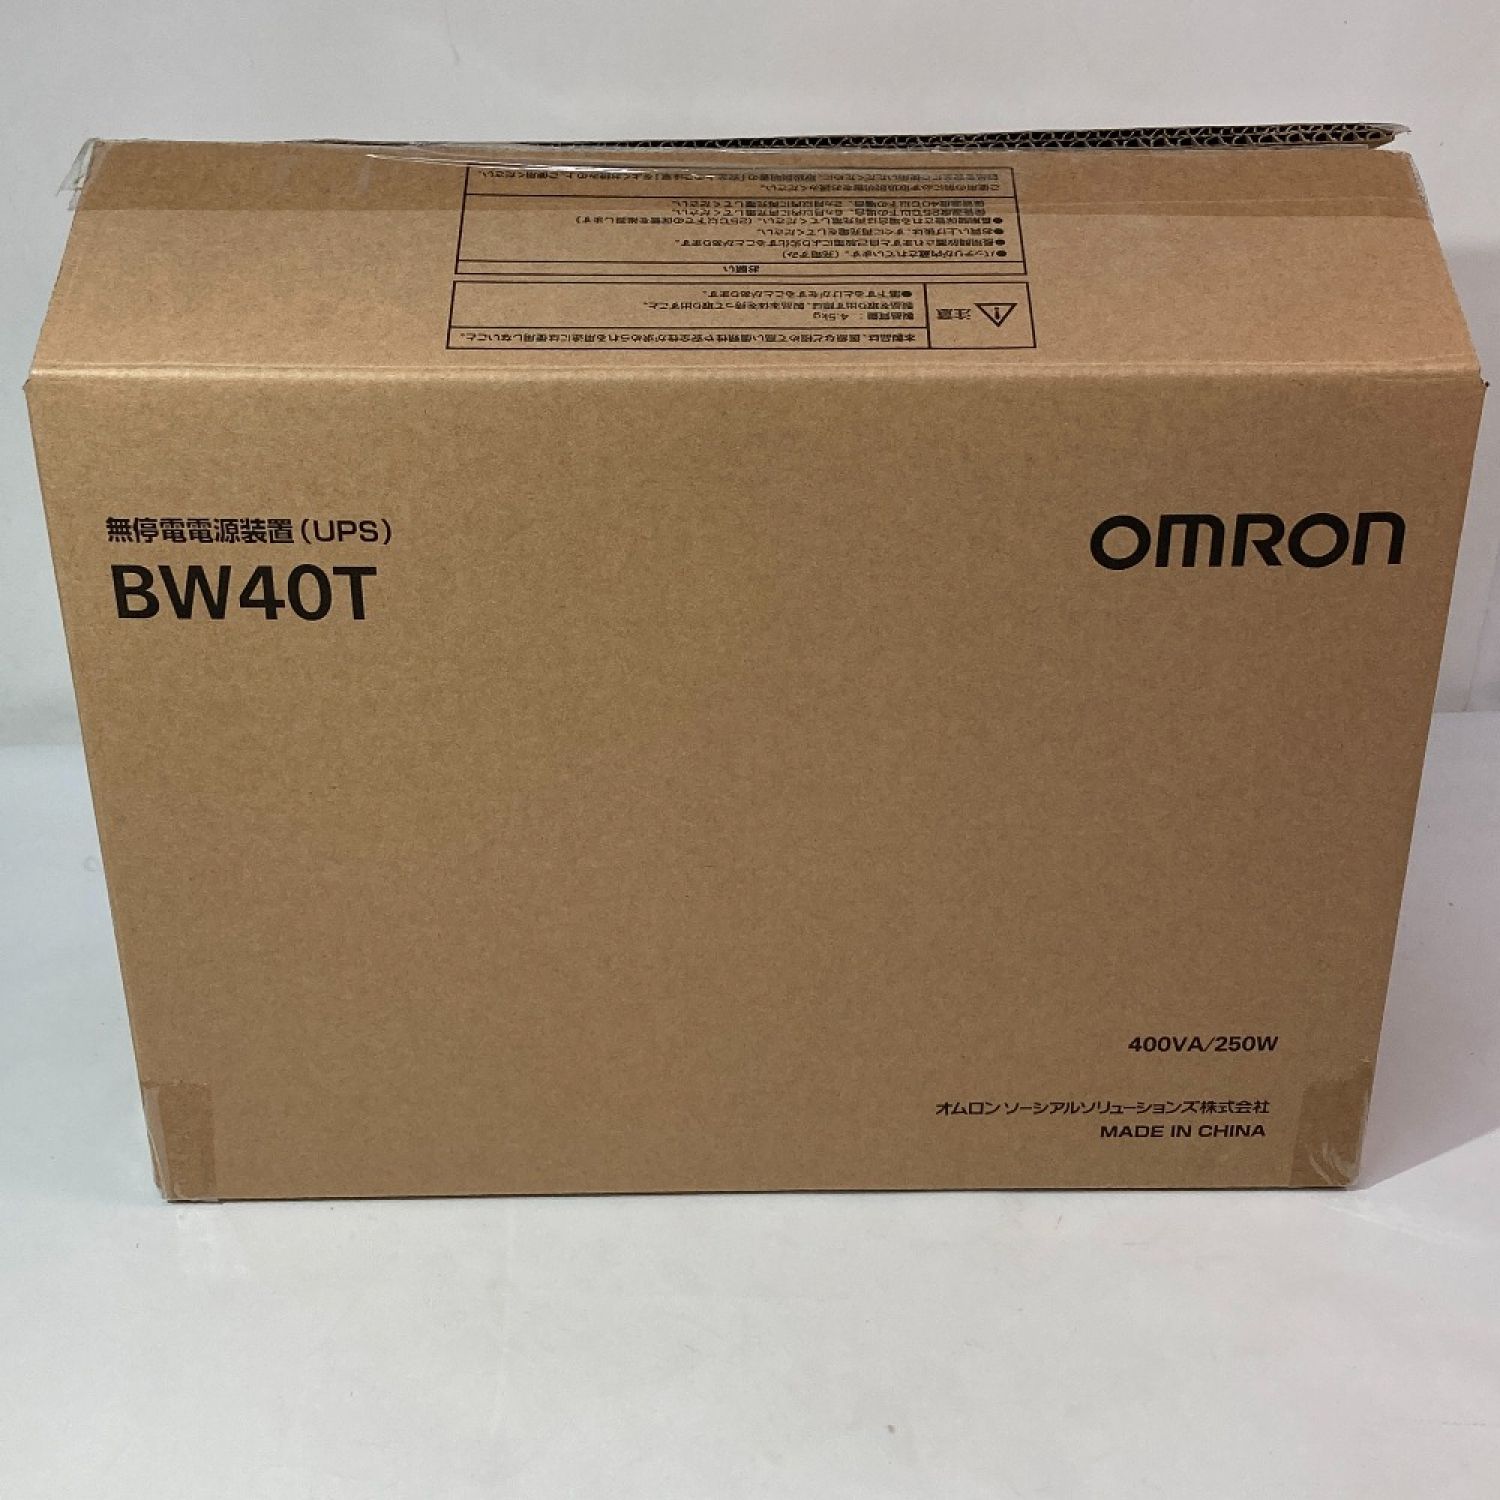 中古】 OMRON オムロン 無停電電源装置(UPS) BW40T BW40T Sランク 